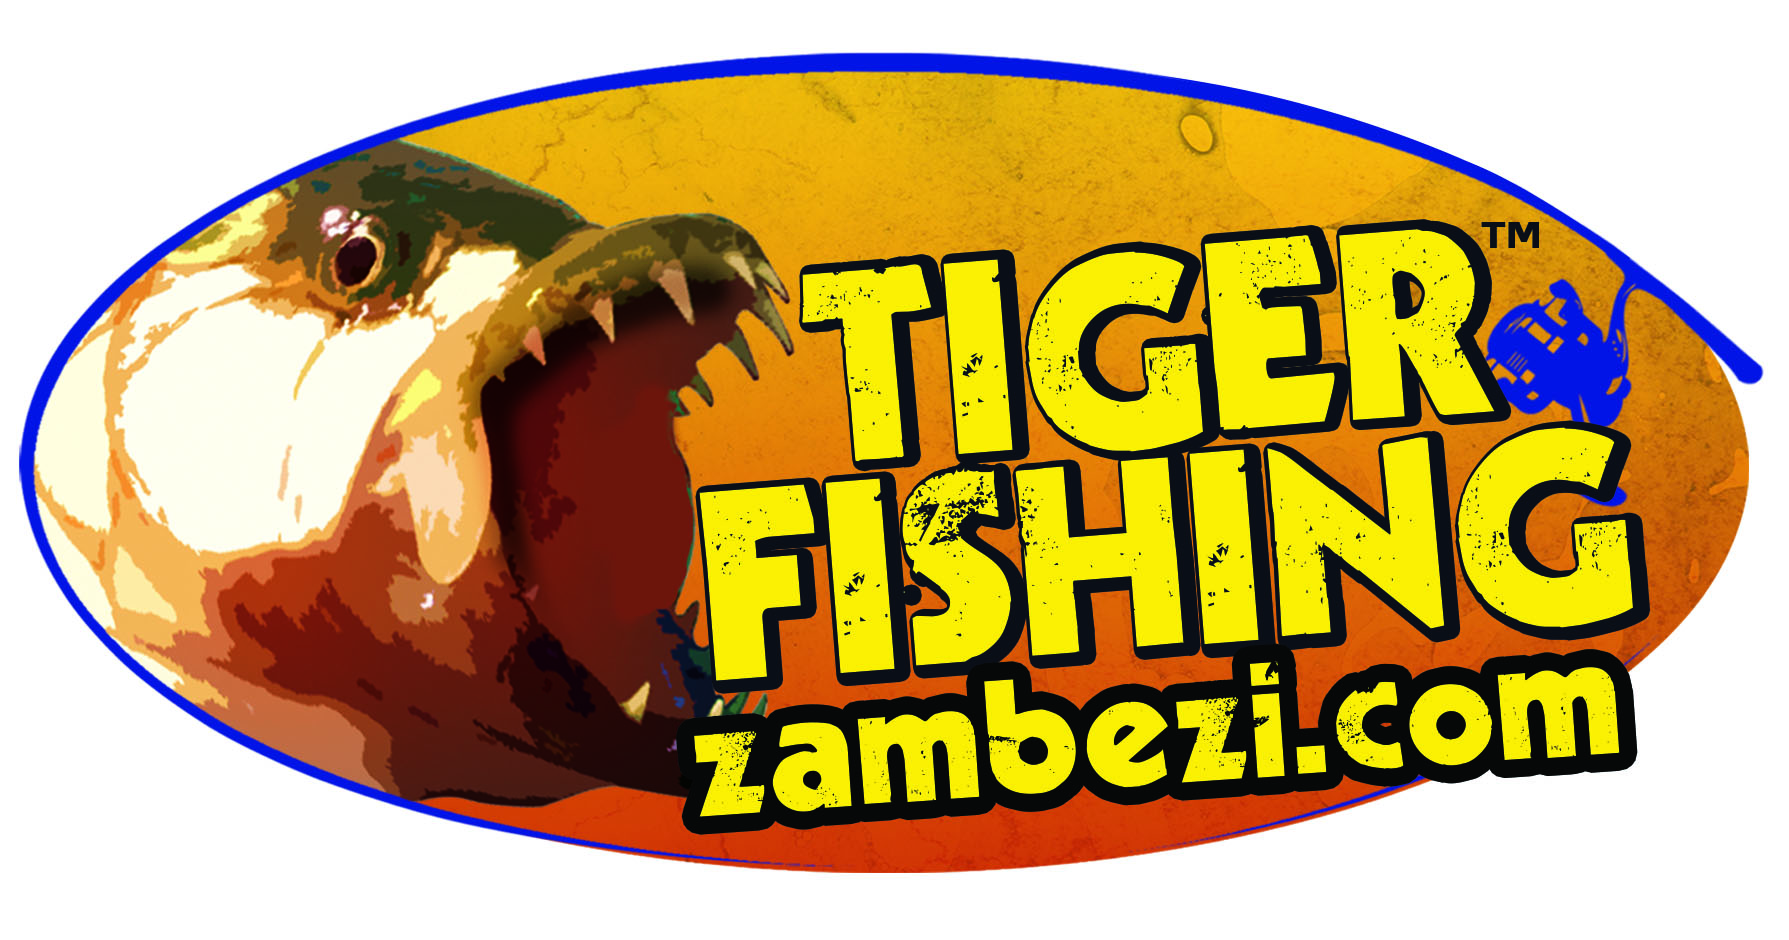 TigerFishingZambezi